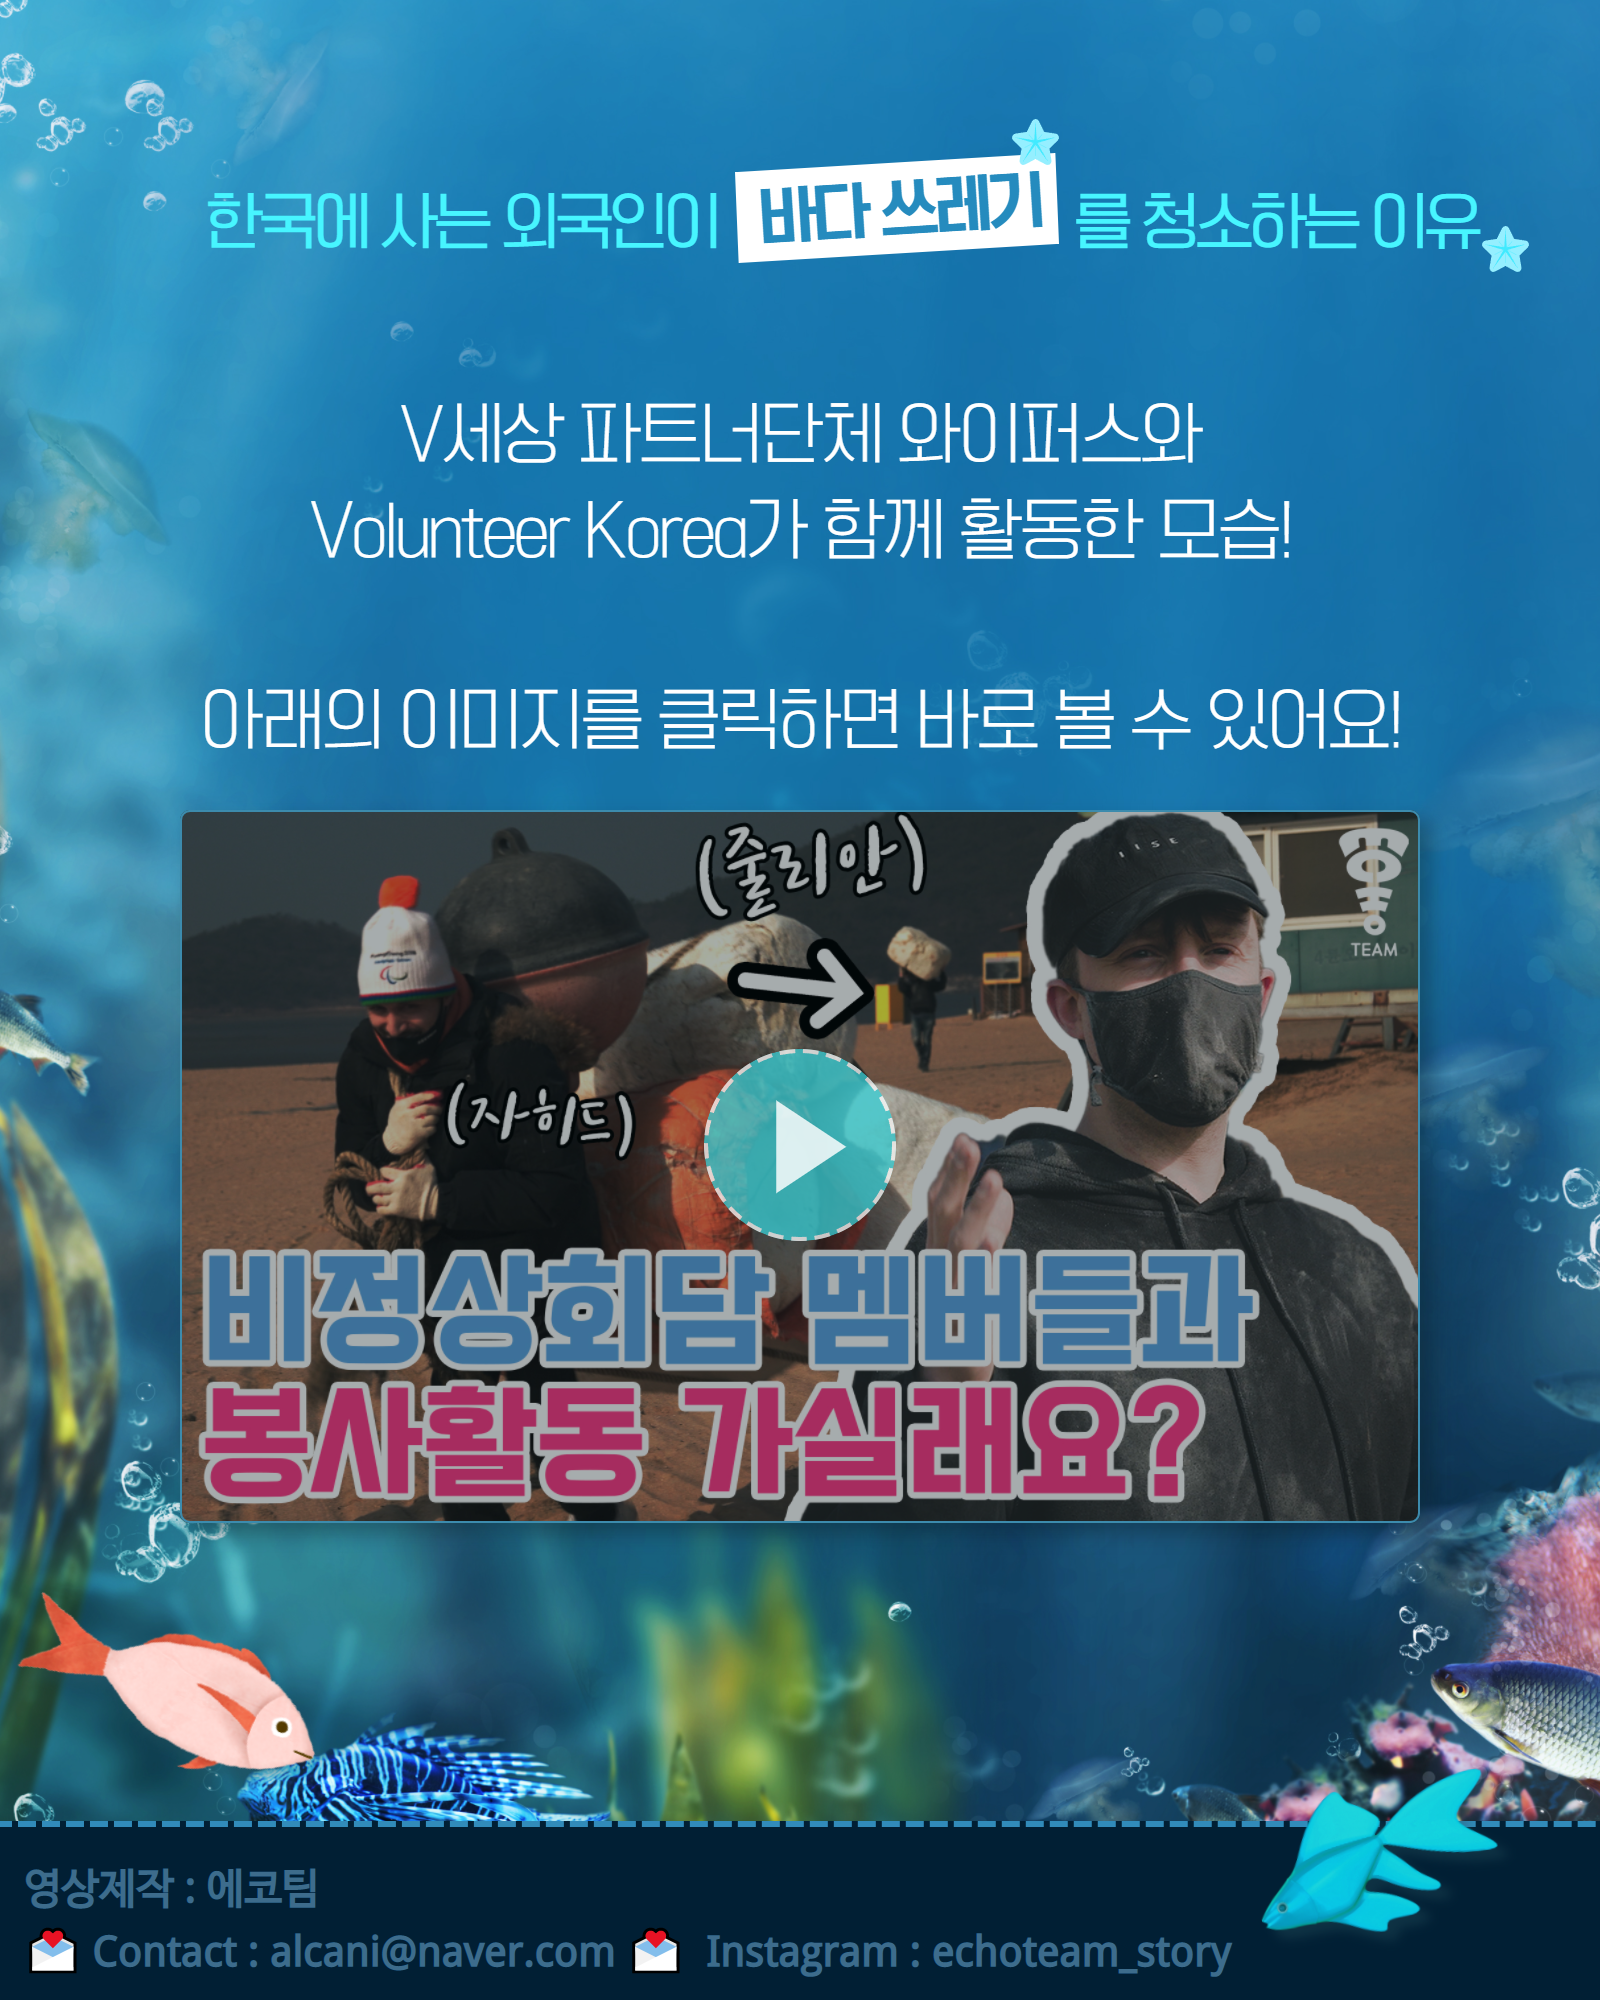 한국에 사는 외국인들이 바다쓰레기를 청소하는 이유가 궁금하다면 이미지를 클릭해주세요! 활동모습을 담은 영상을 볼 수 있습니다!